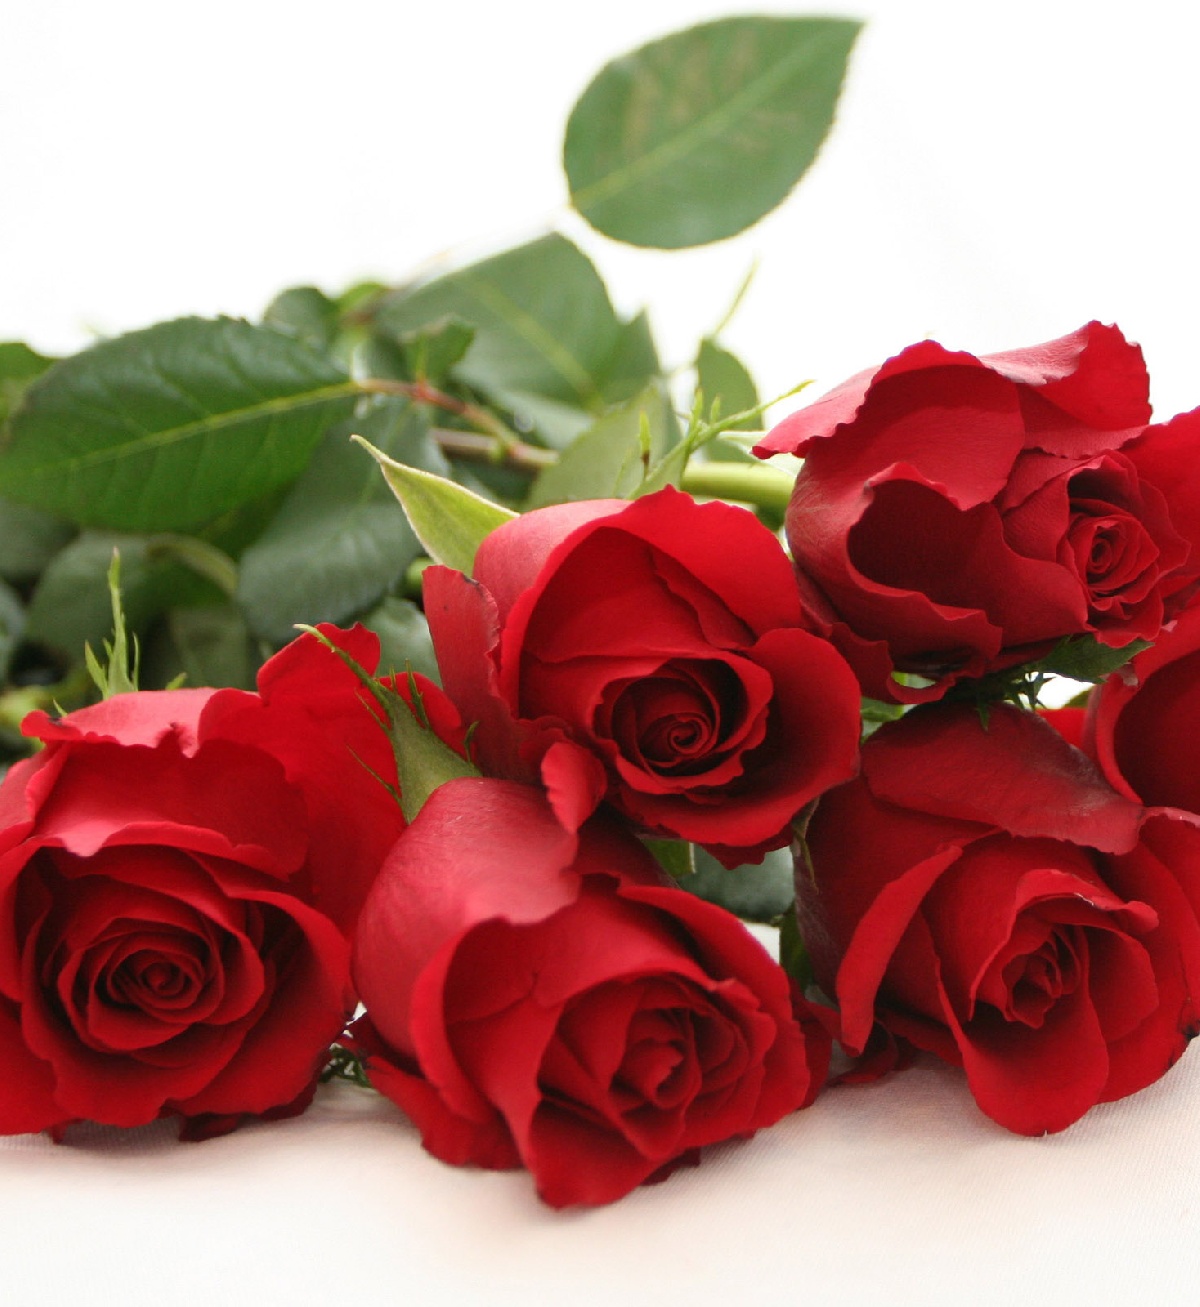 Gol Tv regala rosas a los enamorados